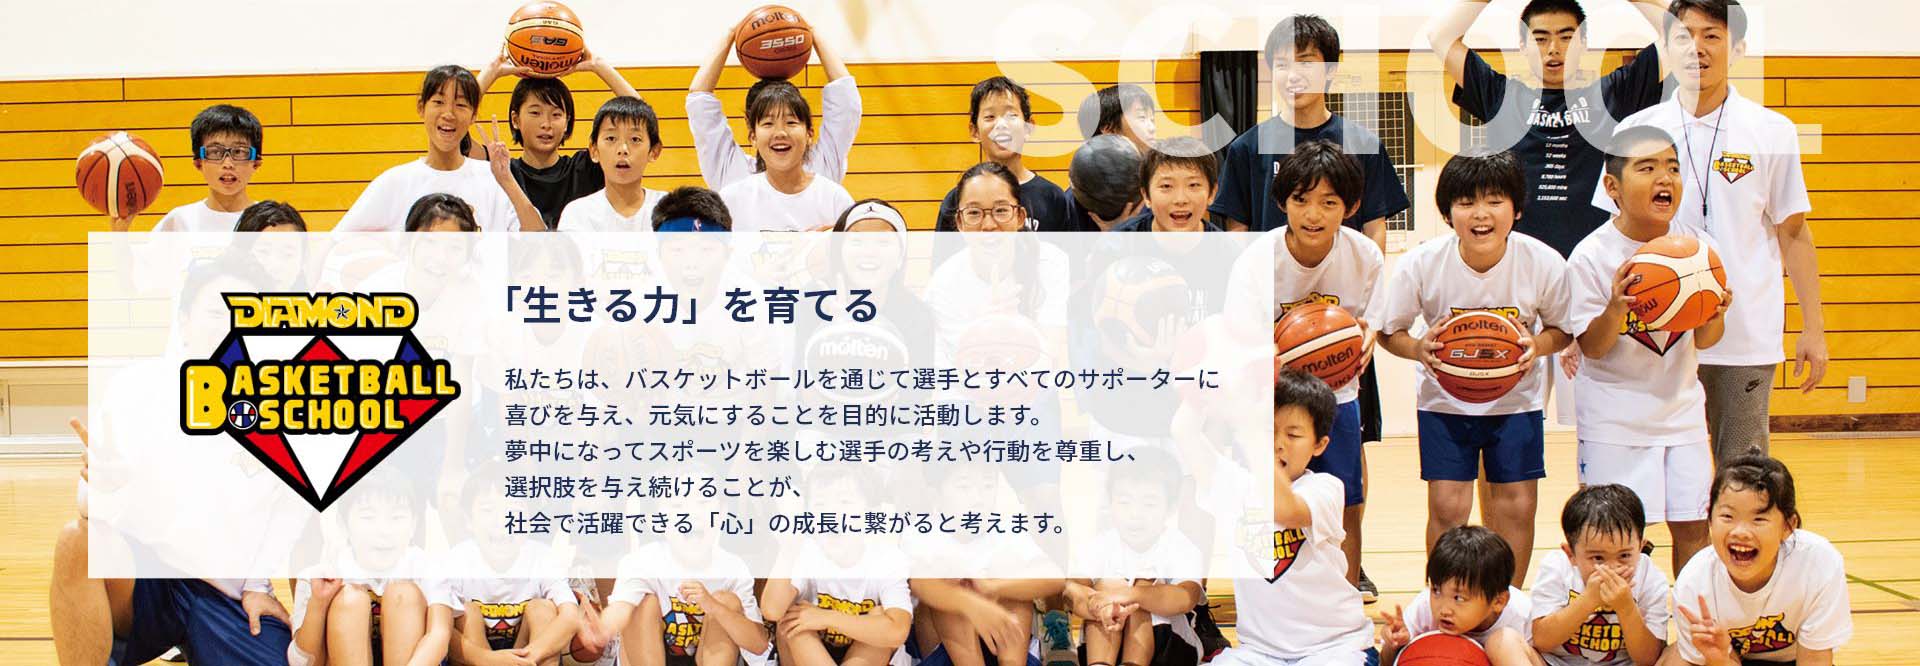 子供向けバスケ教室、大阪でトップクラスの通いやすさ